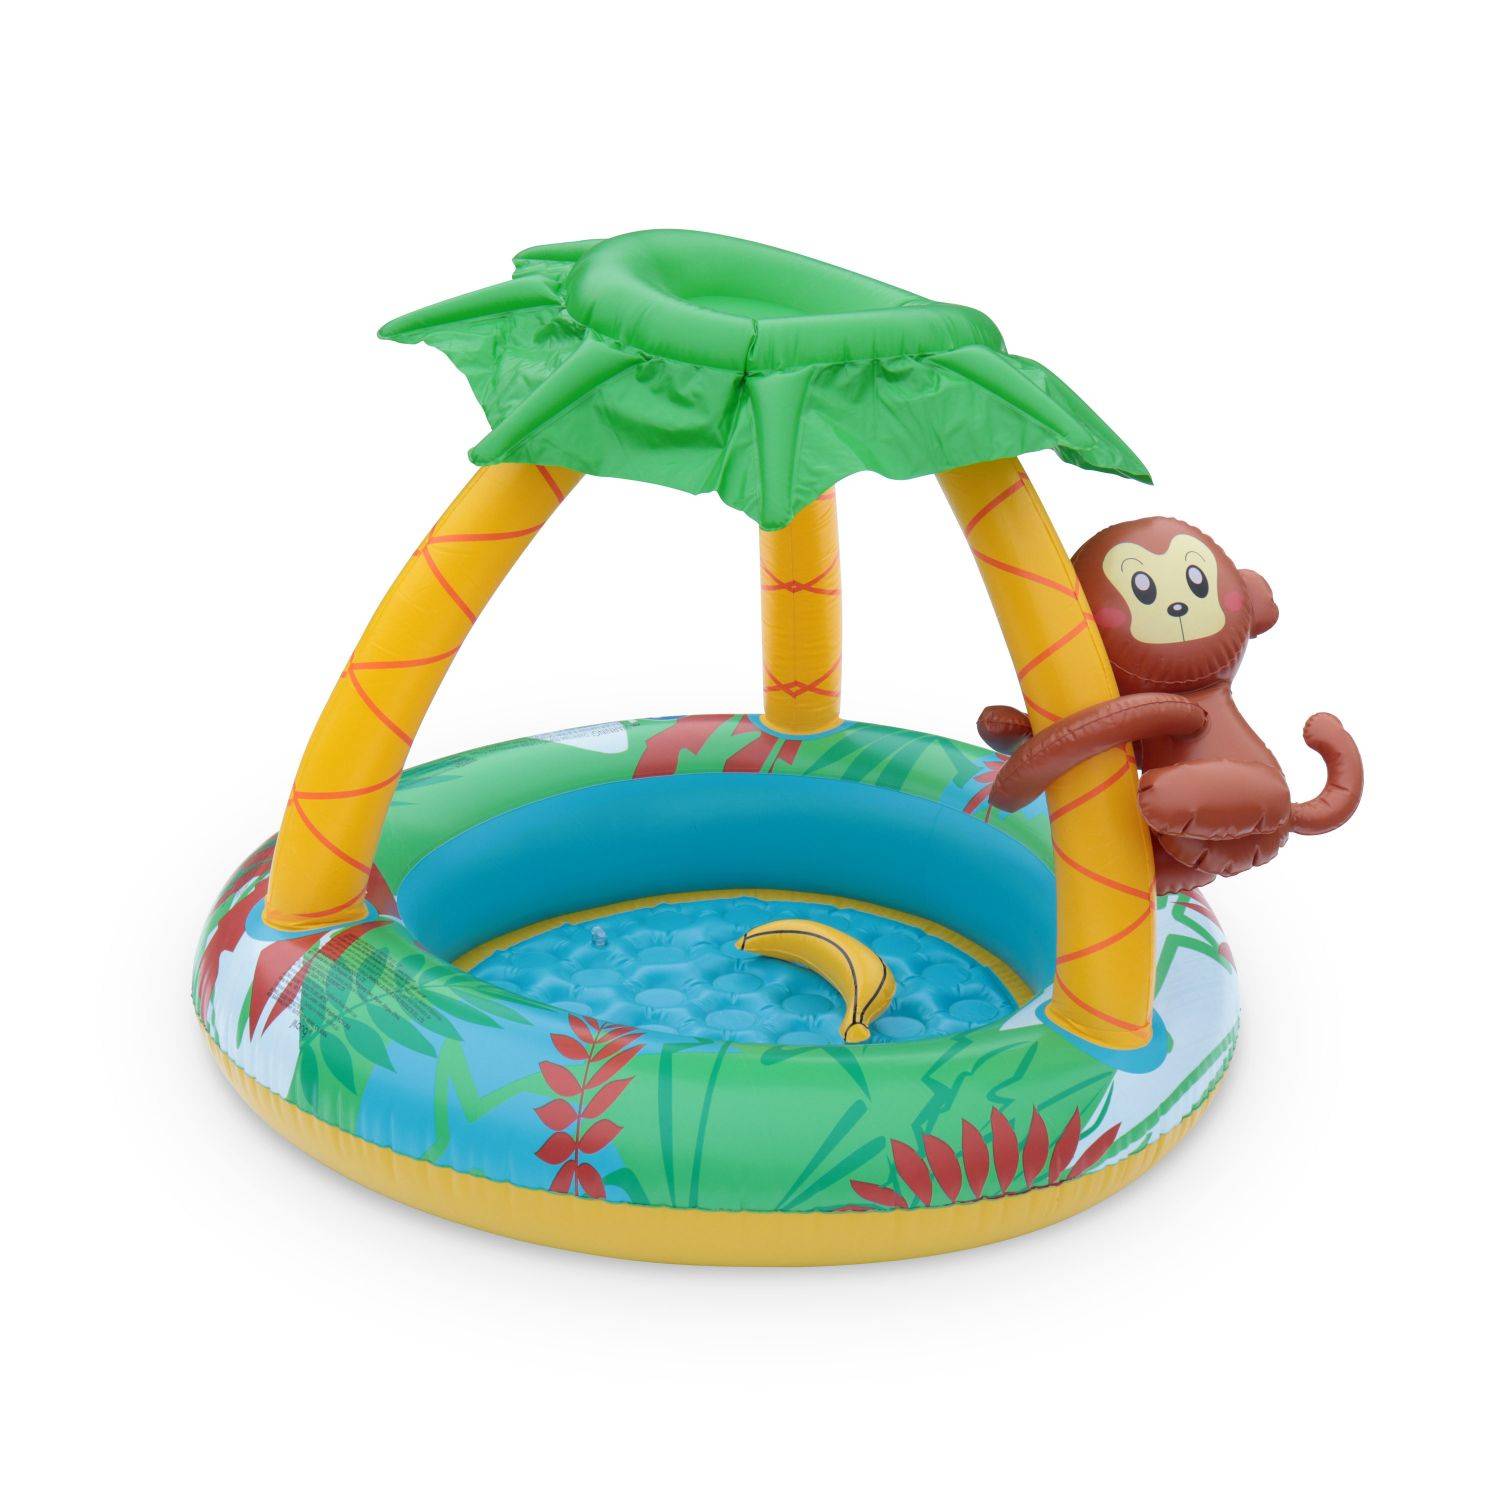 Pierenbad opblaasbaar JUNGLE, babybad met zonnescherm en speelgoed, 100 x 80 cm Photo1